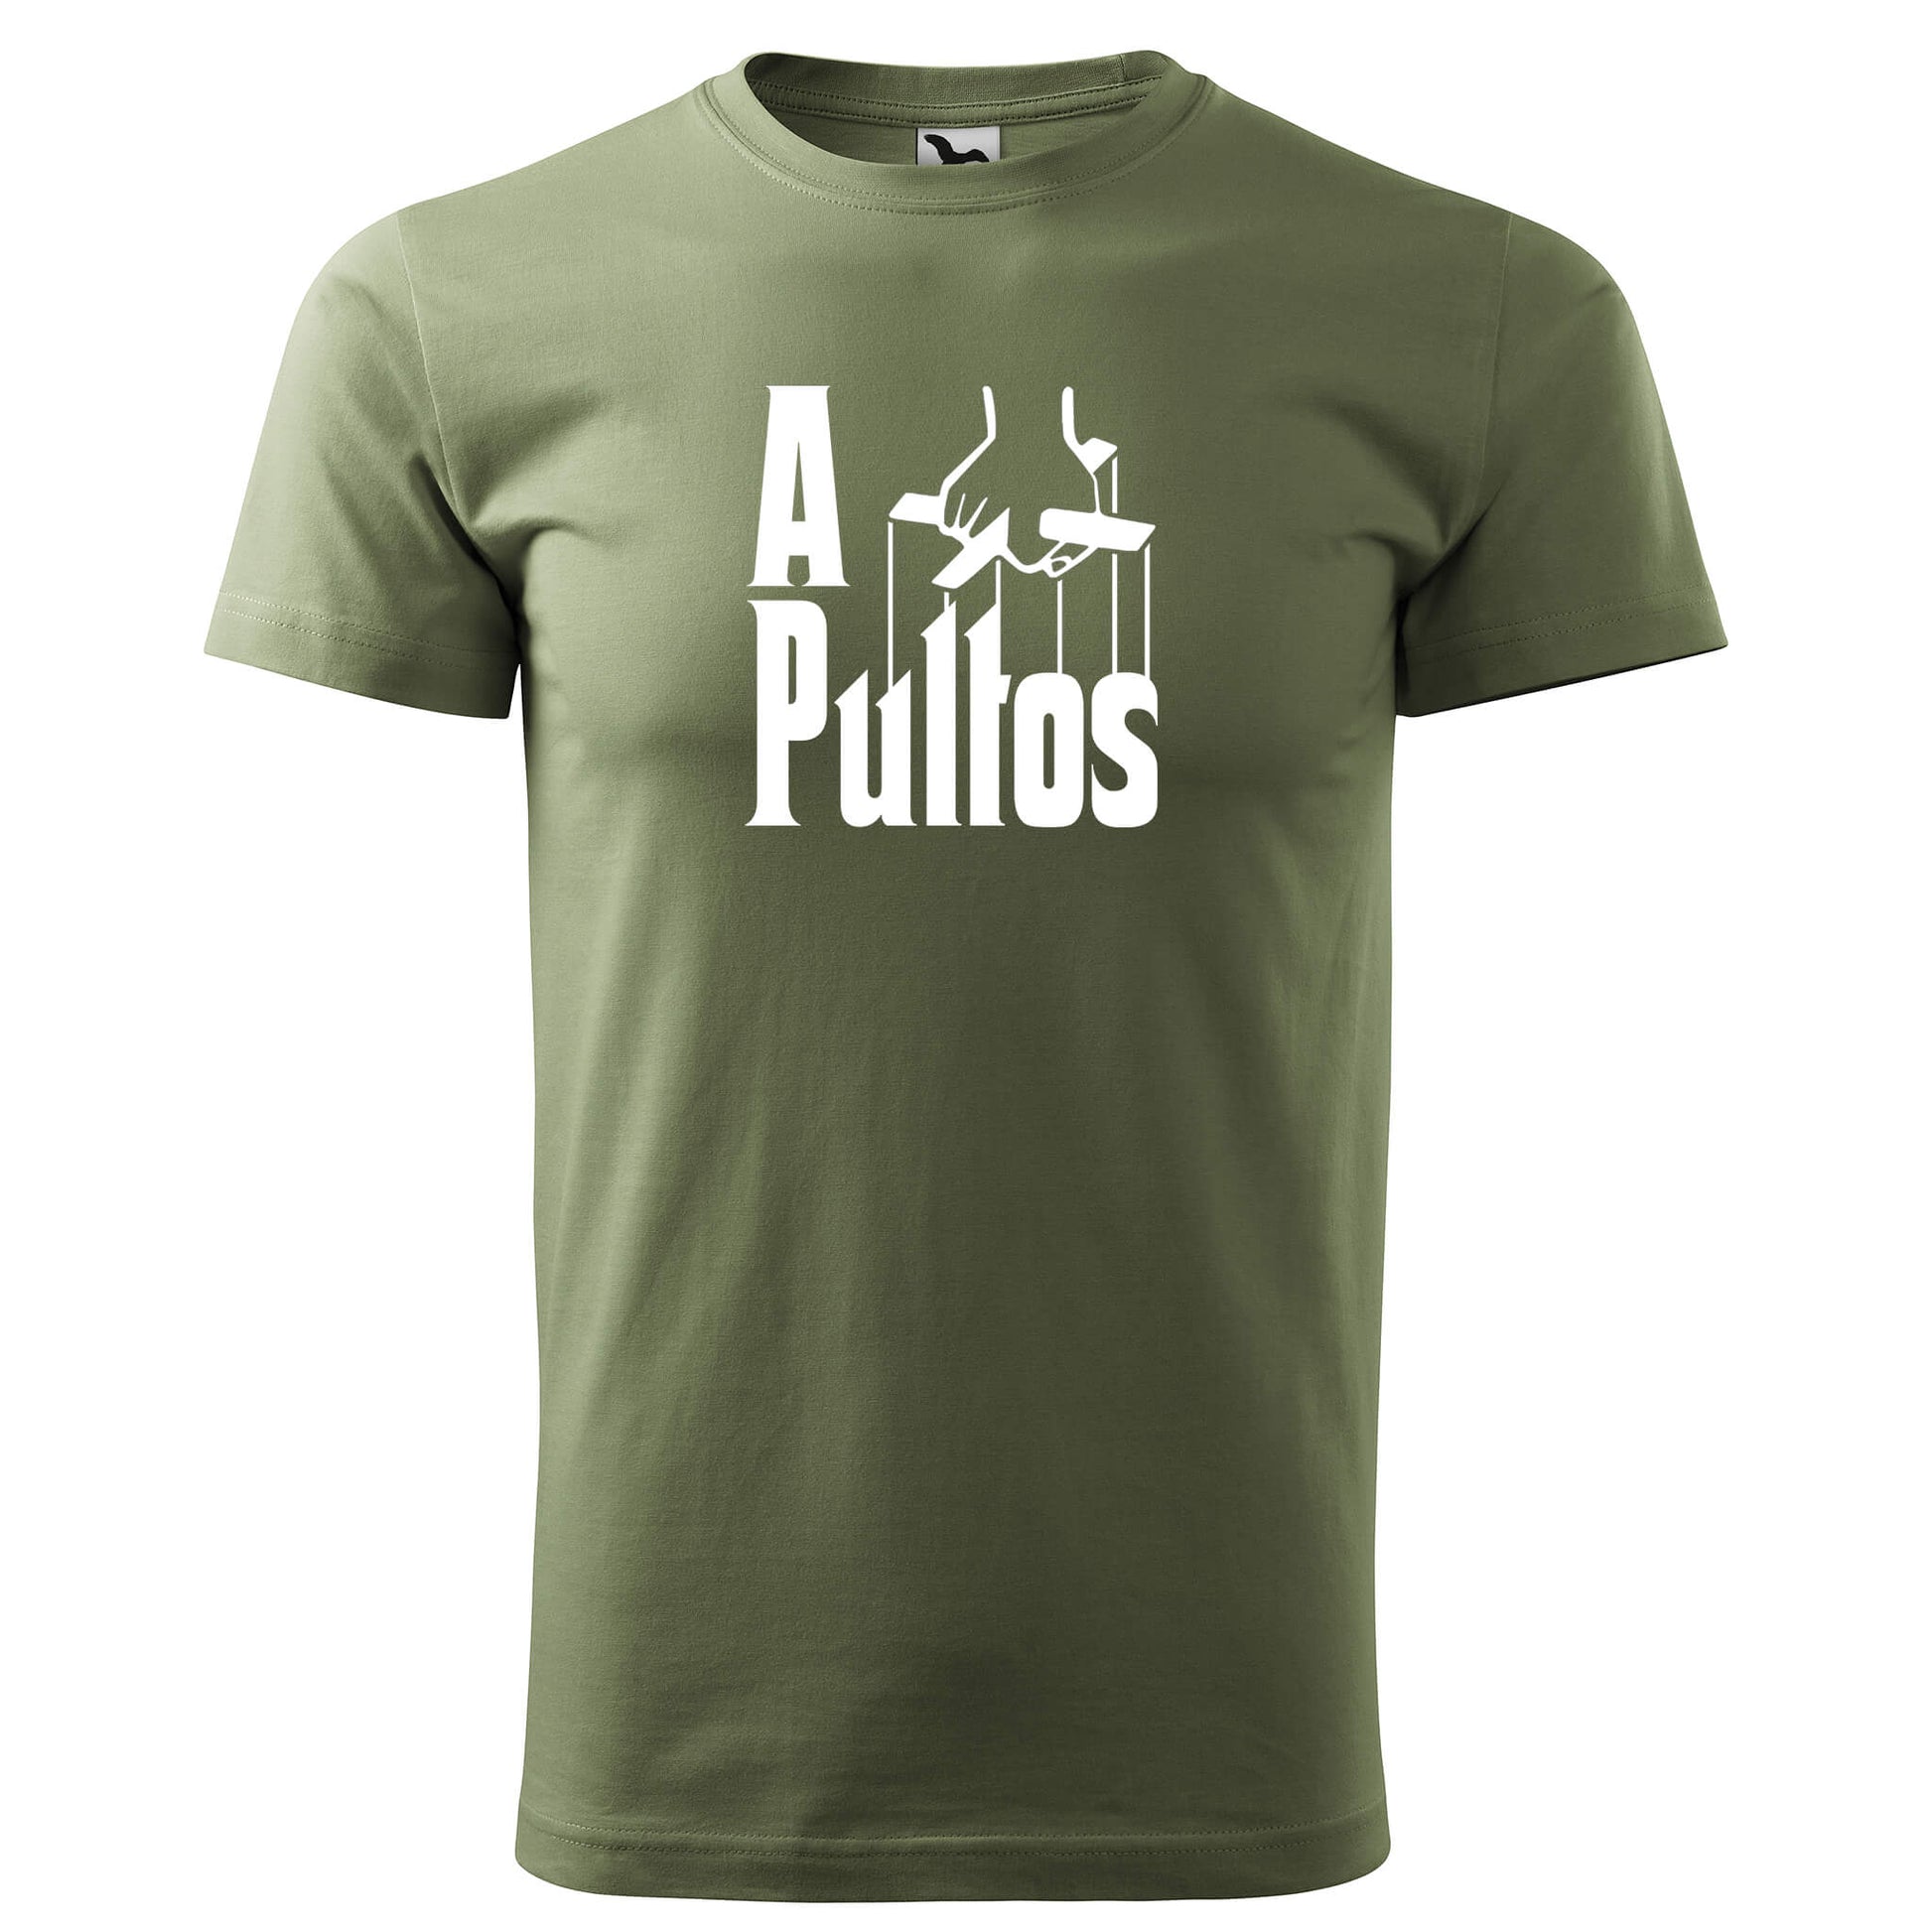 T-shirt - A pultos - rvdesignprint